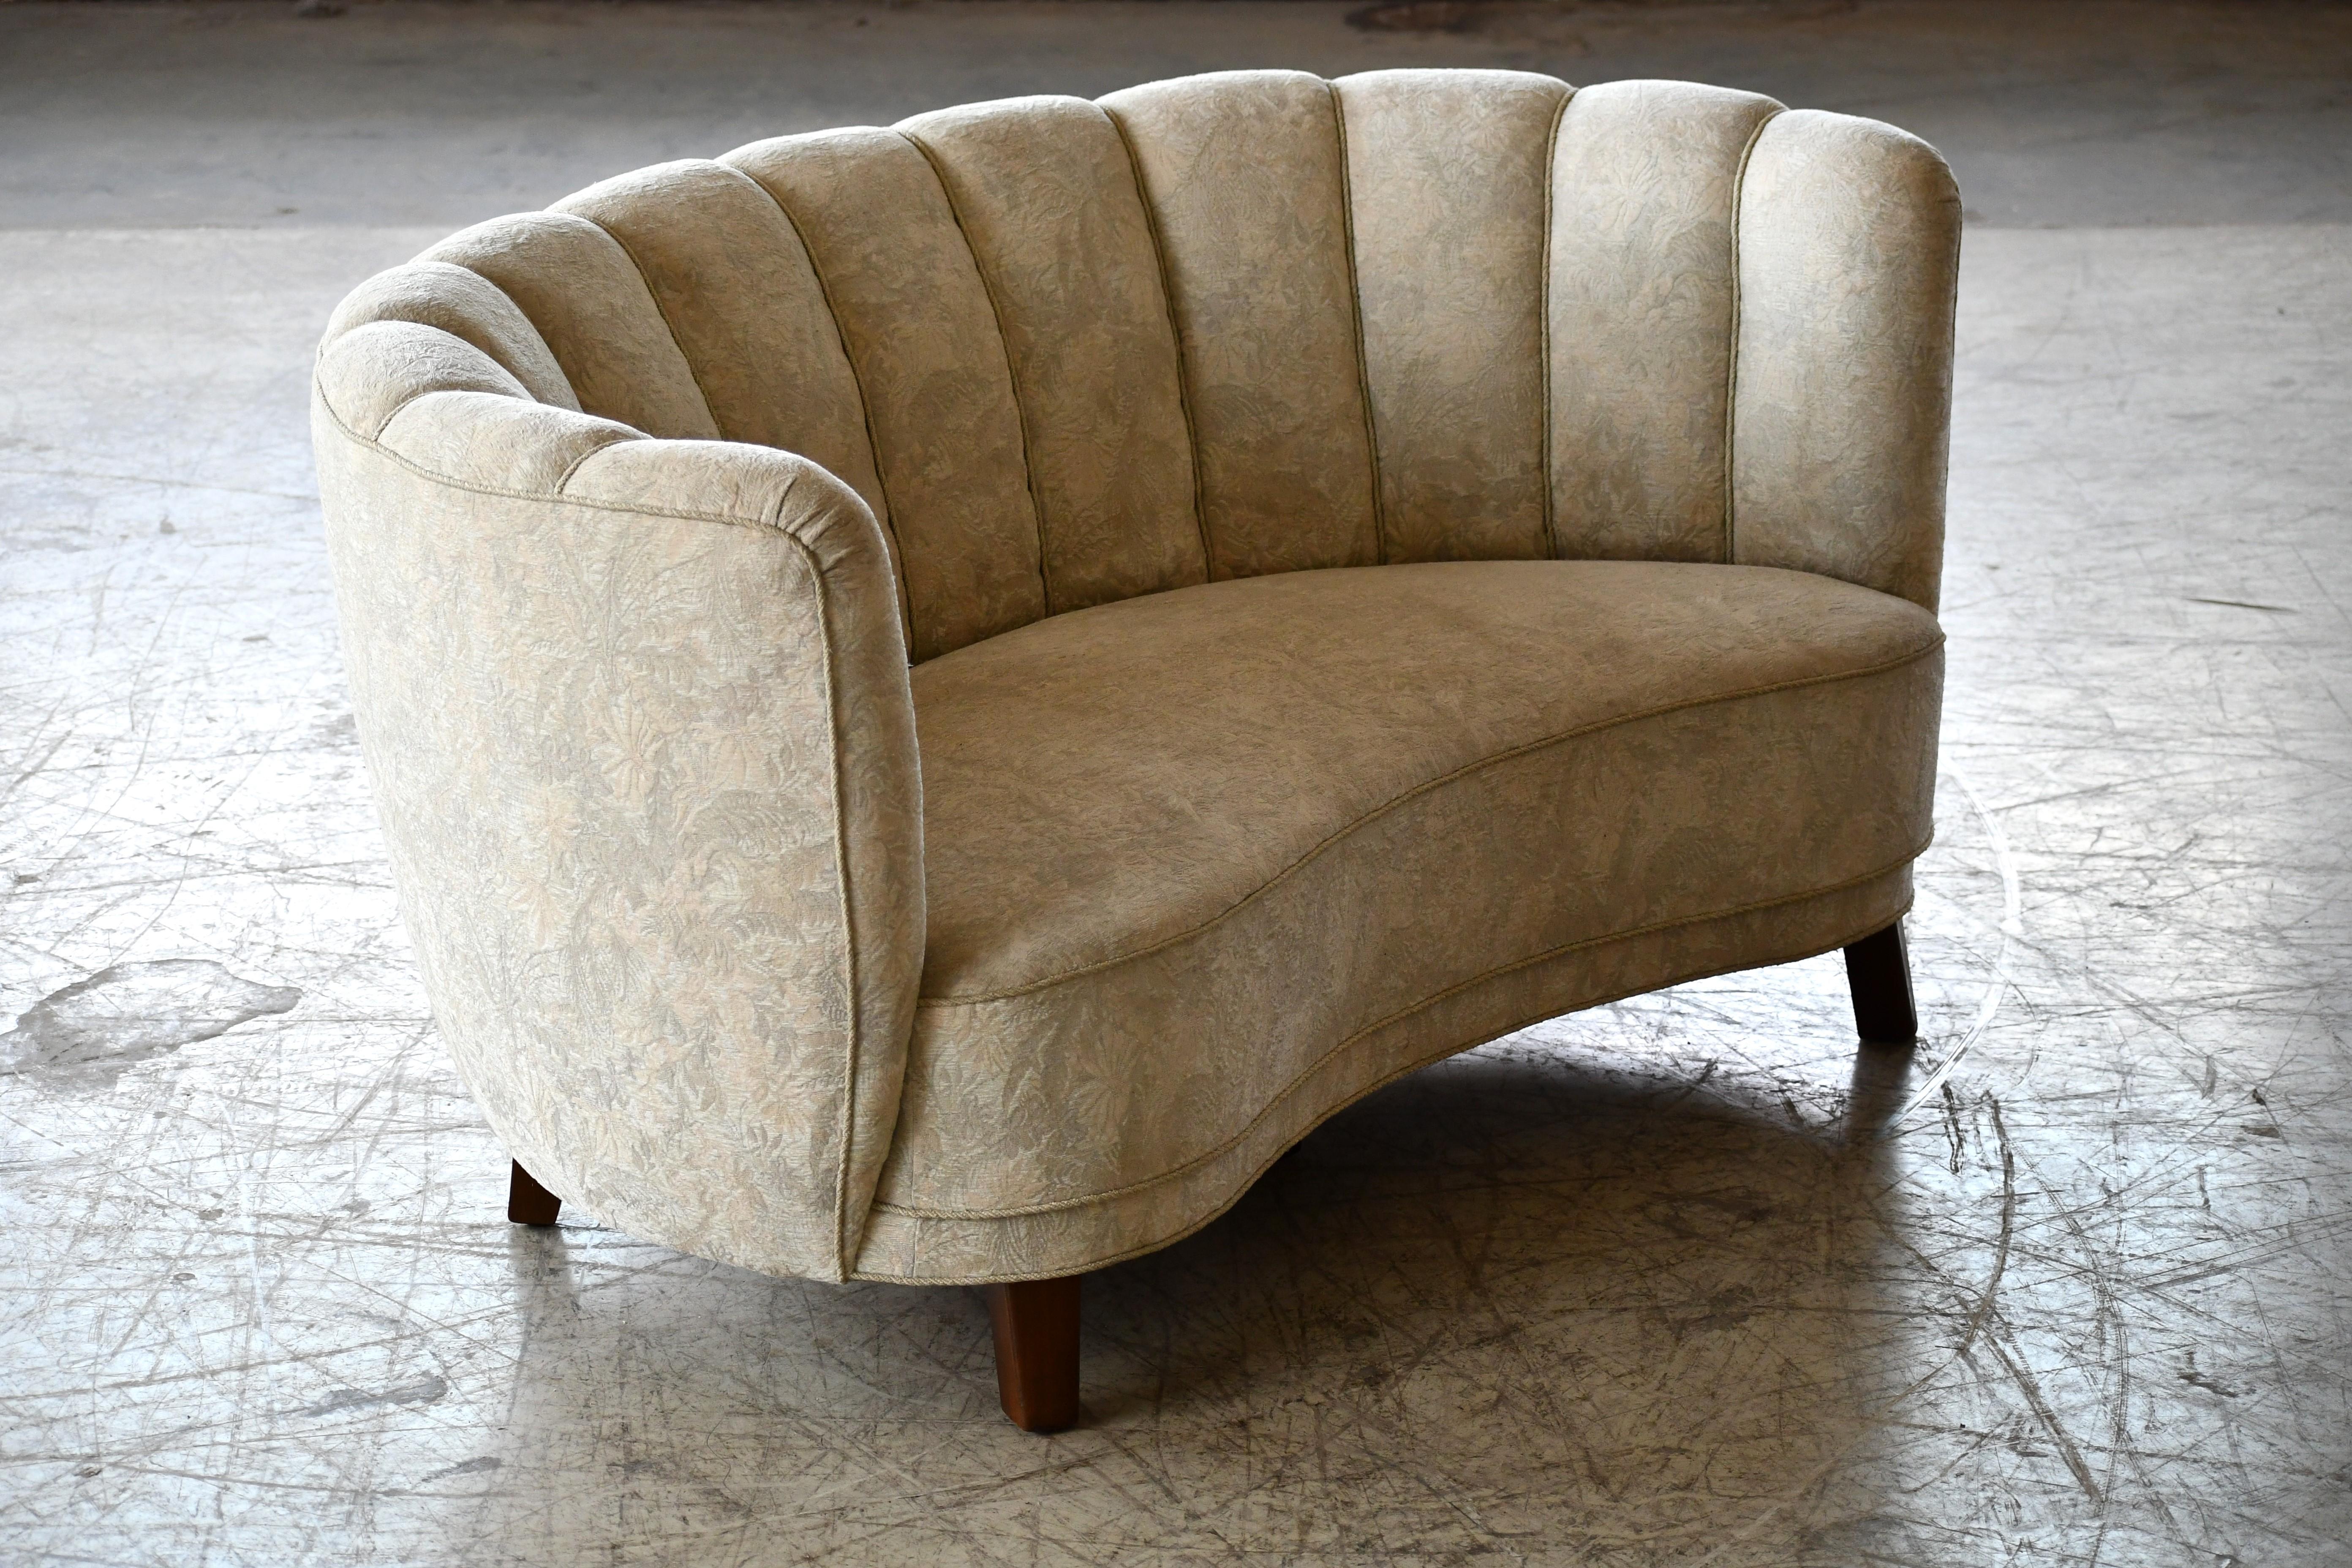 Schönes und sehr elegantes geschwungenes Zweisitzer-Sofa aus den 1940er Jahren in weißem Wollstoff. Dieses Sofa hat etwas höhere Beine, was auf ein Produktionsdatum näher an 1950 hinweist, als höhere Beine populärer wurden. Das Sofa hat Federn im